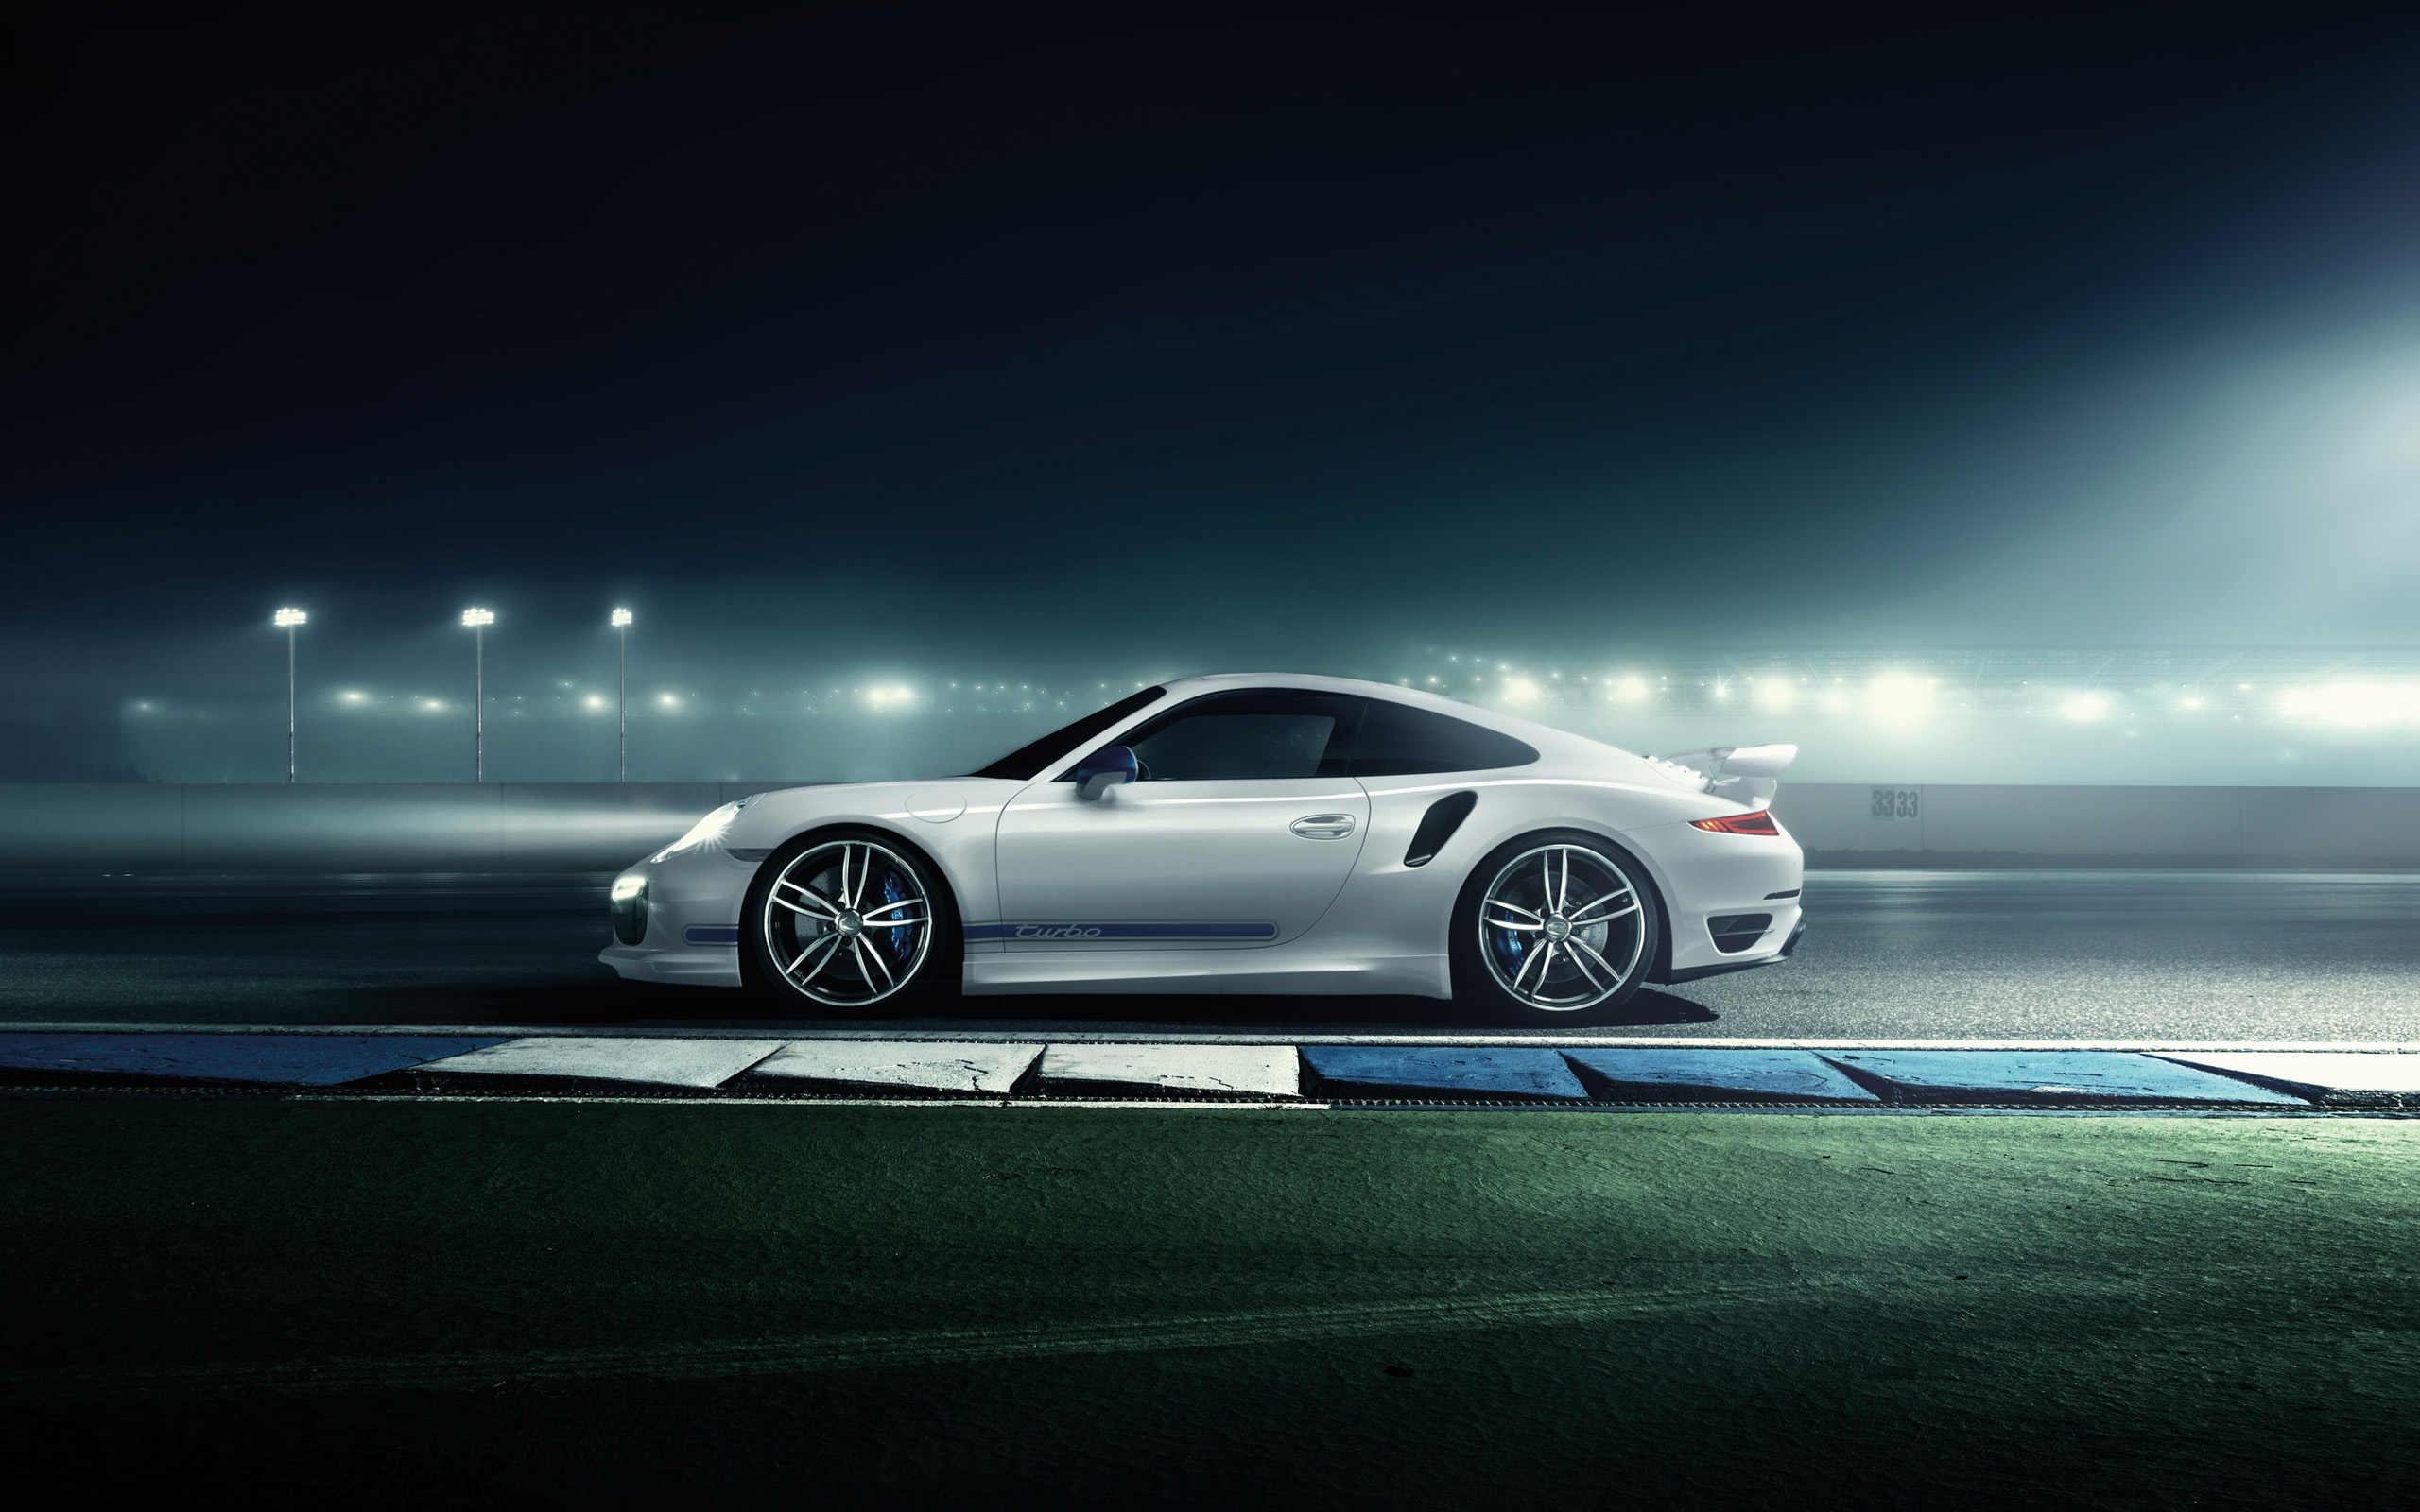 Hd Car Wallpaper - Porsche 991 Techart Wheels - HD Wallpaper 